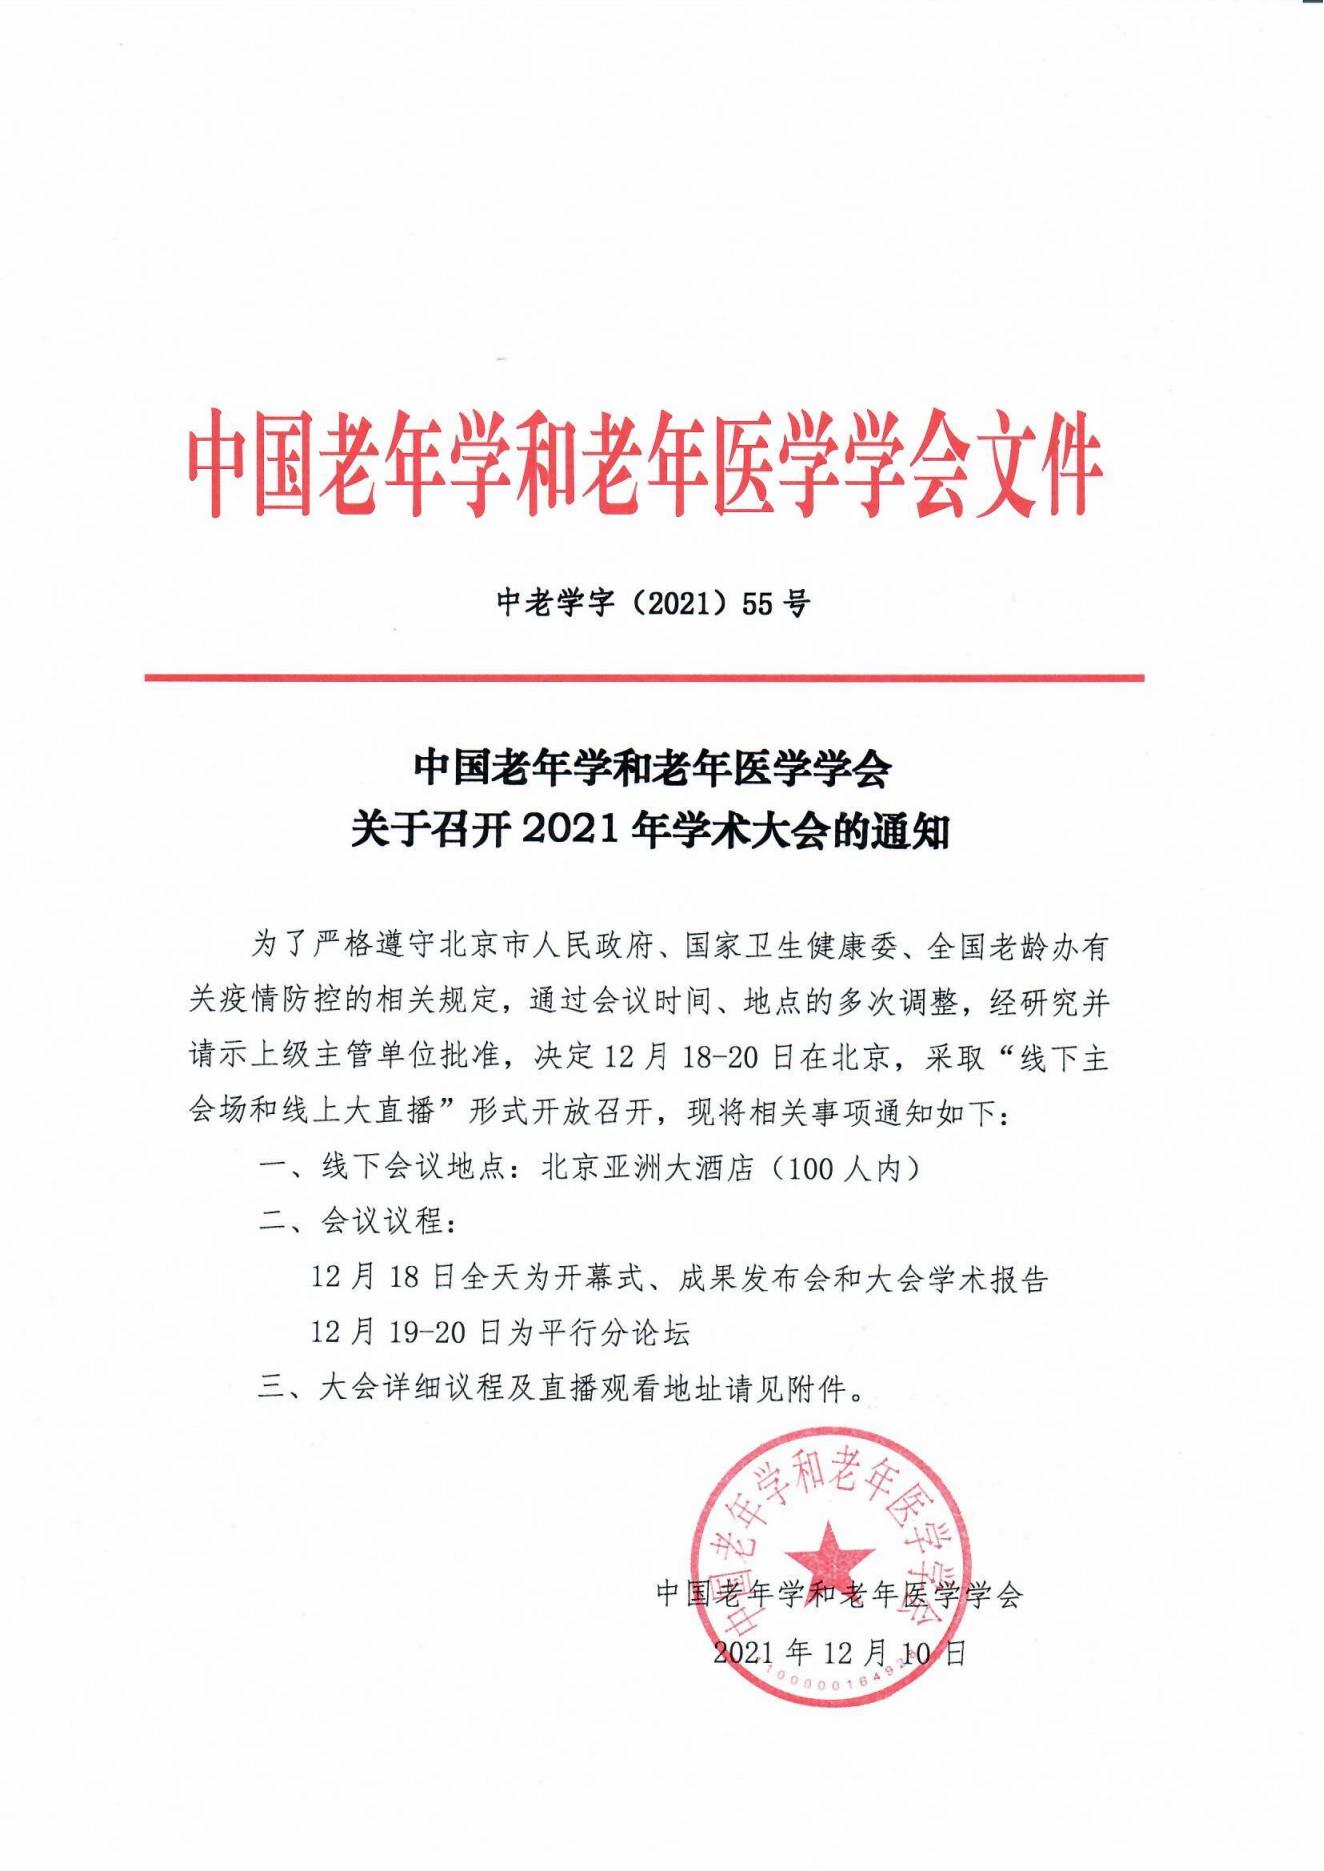 学字55-中国老年学和老年医学学会关于召开2021年学术大会的通知_00.jpg